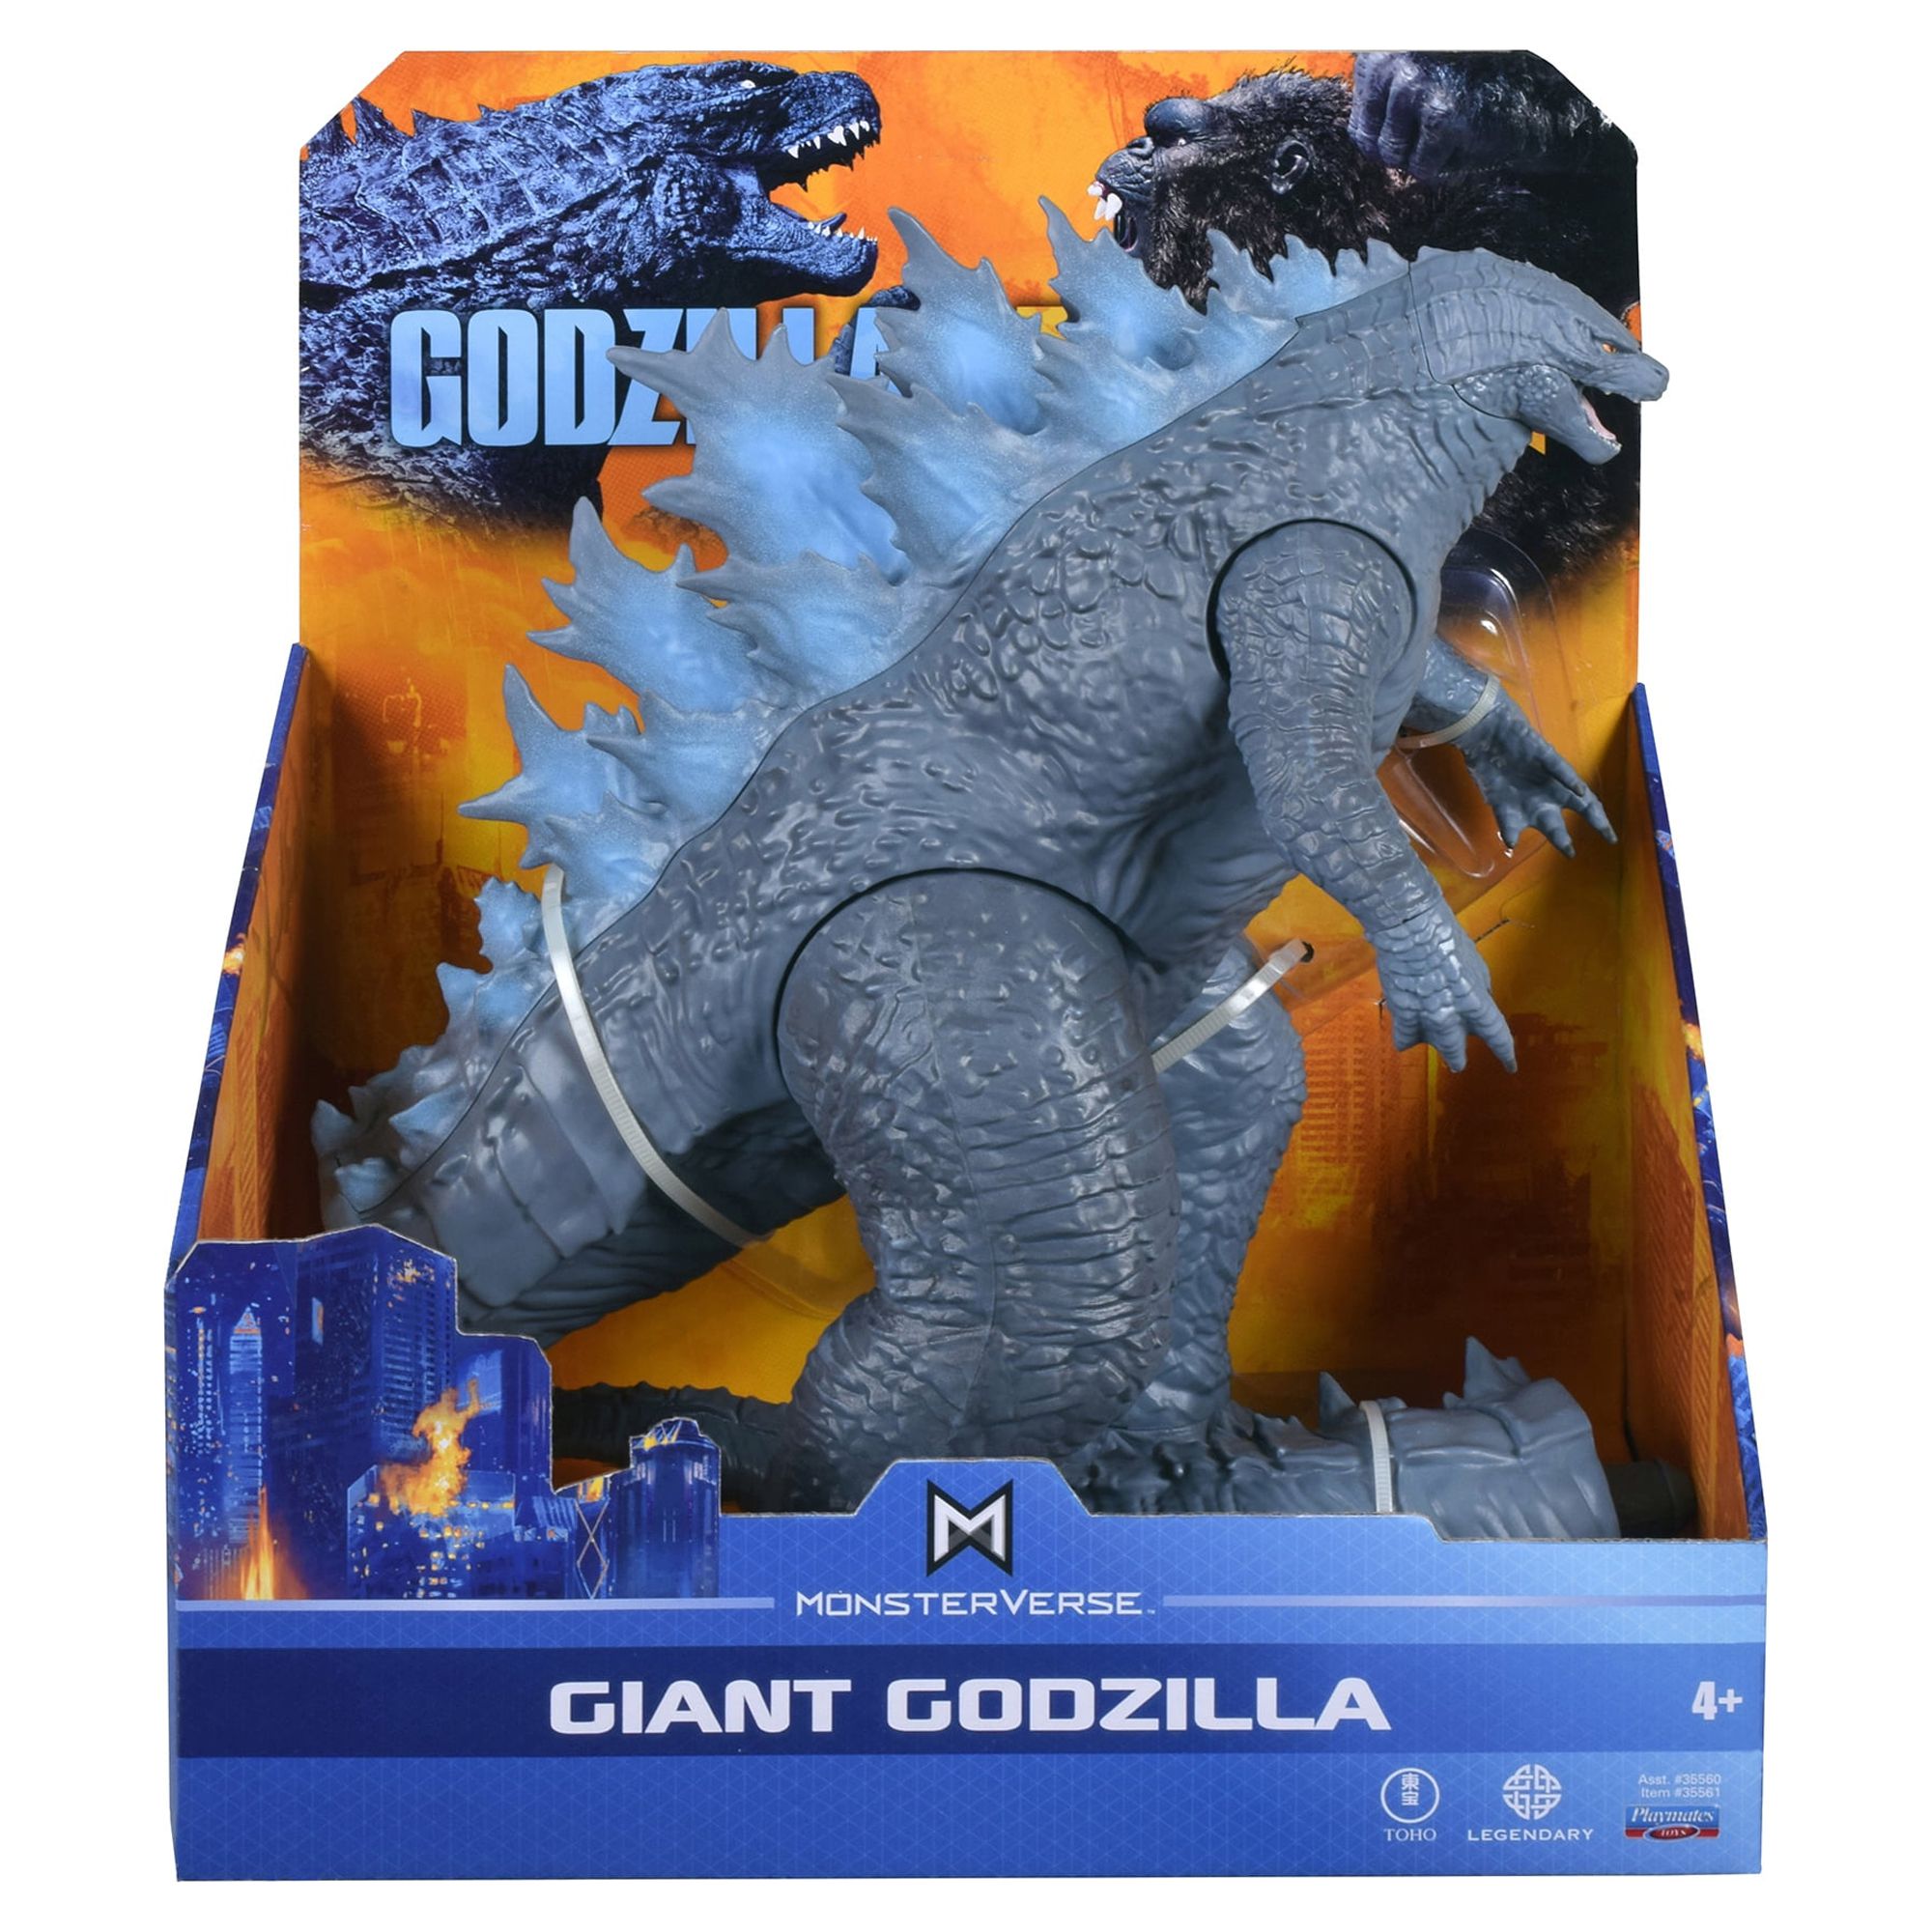 Godzilla 11" Giant Godzilla Figure - image 2 of 6